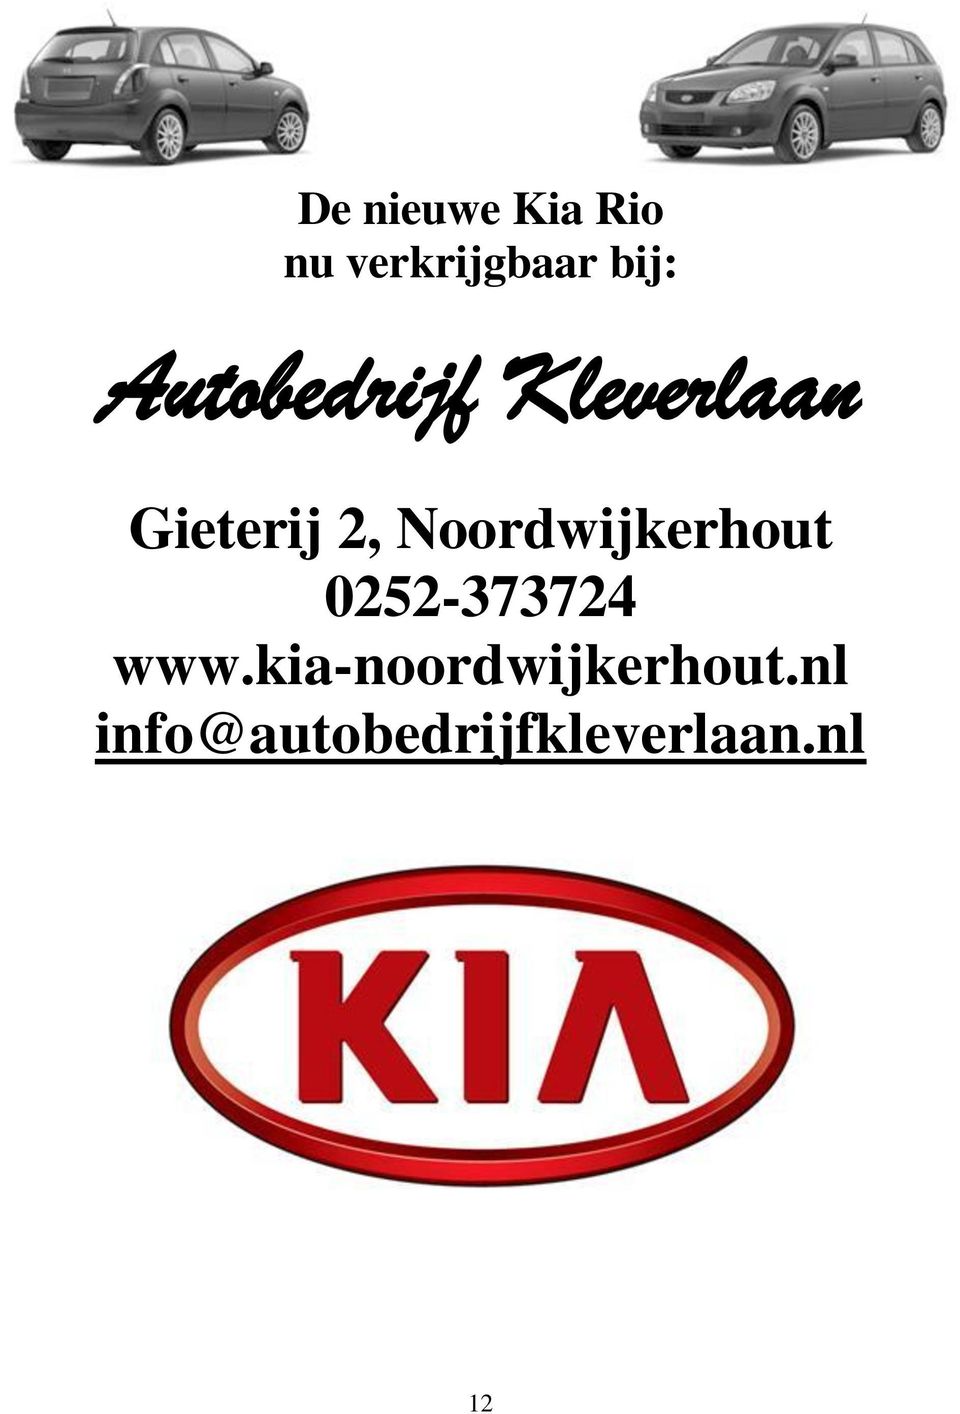 Noordwijkerhout 0252-373724 www.